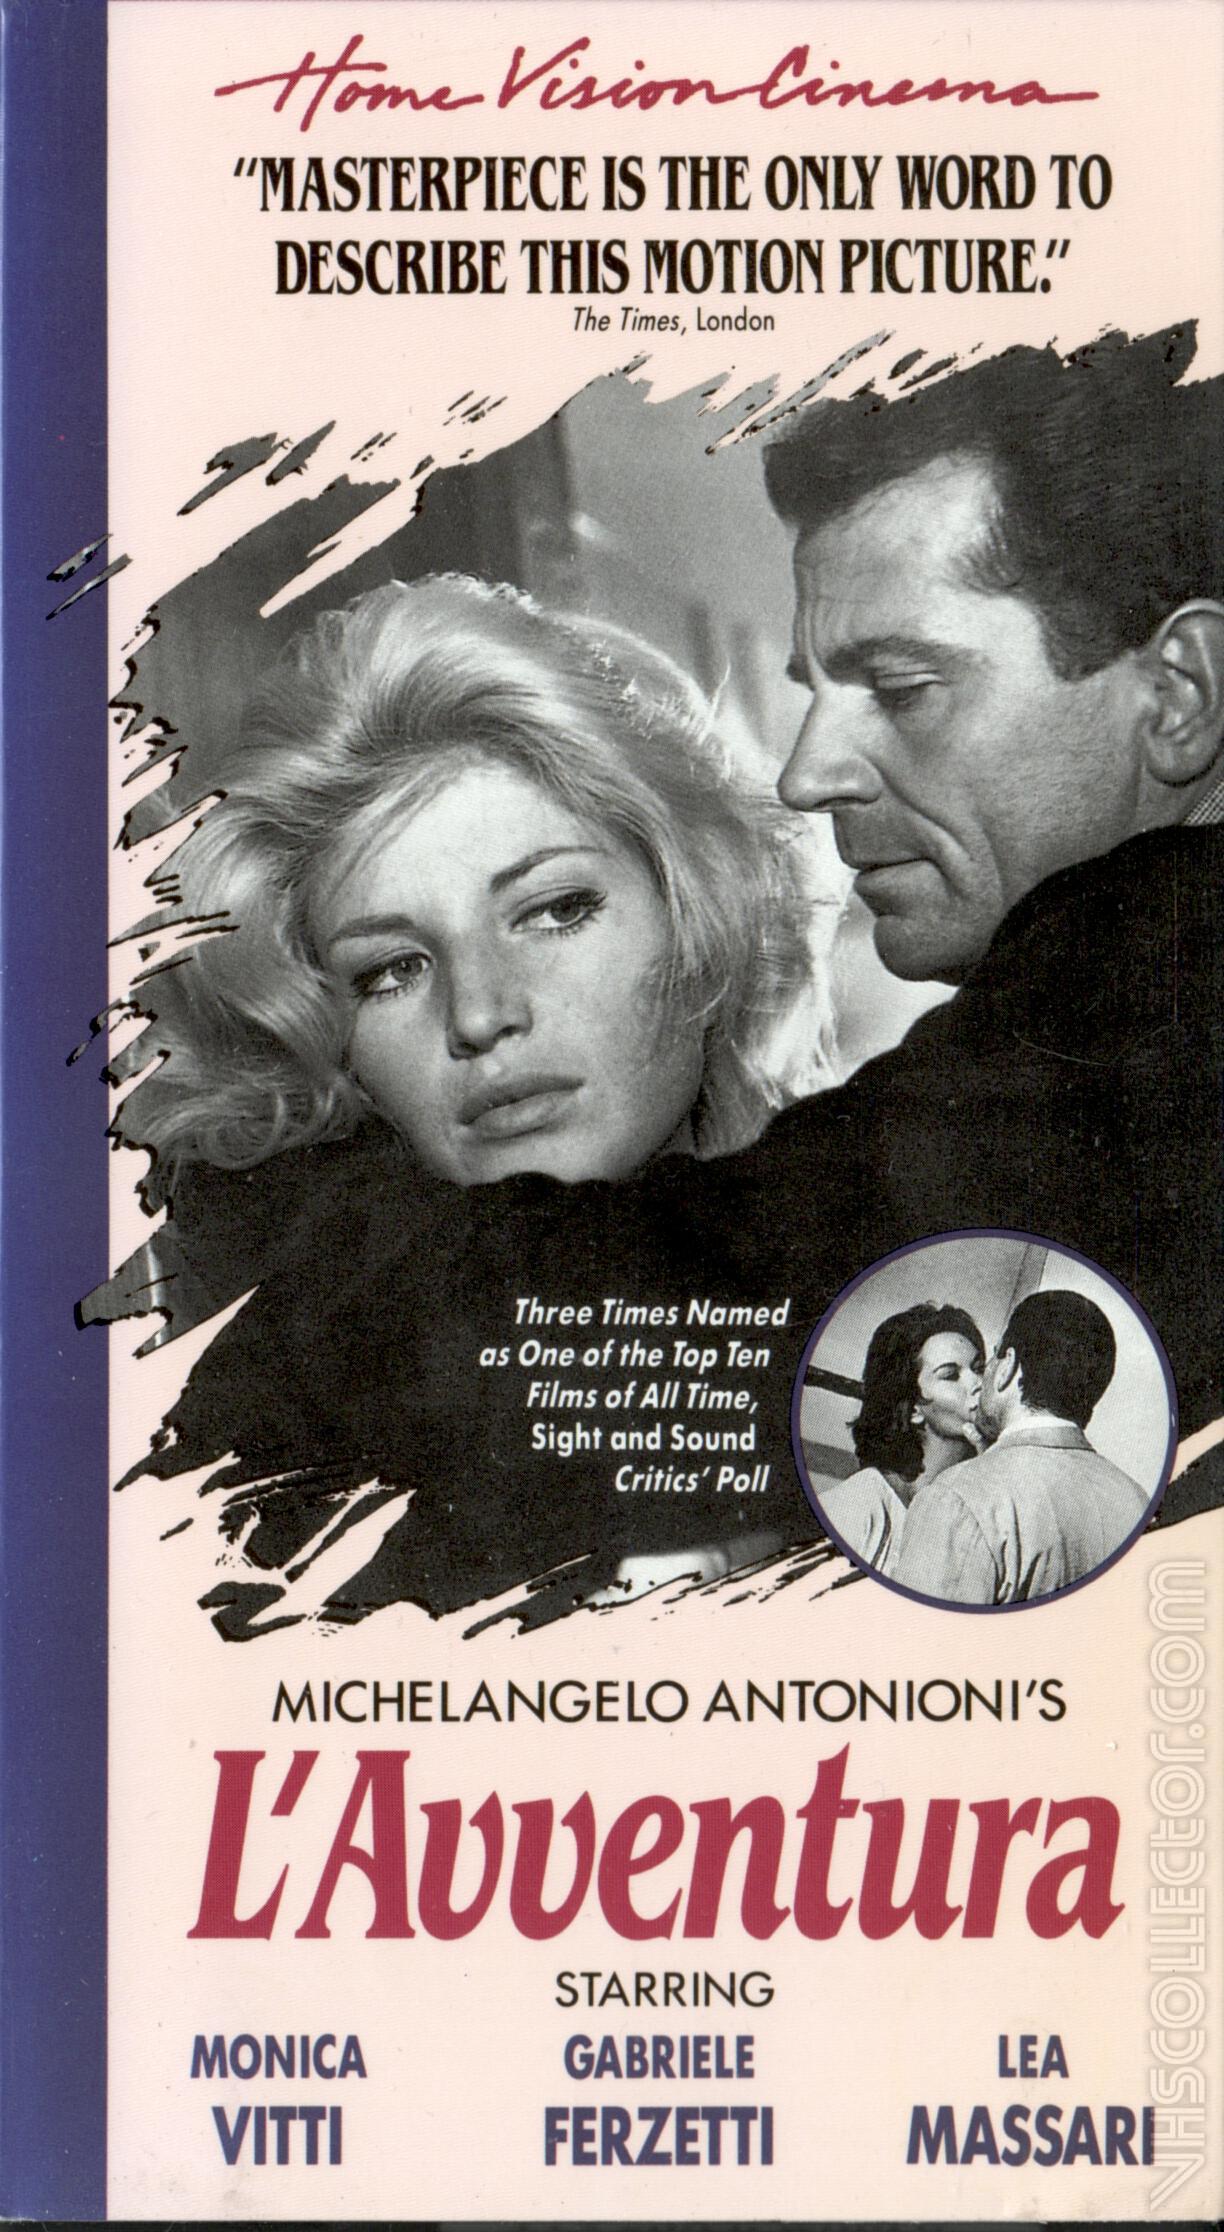 Приключение антониони. Приключение (l'avventura) 1960. Микеланджело Антониони приключение. Приключение 1960 Постер.